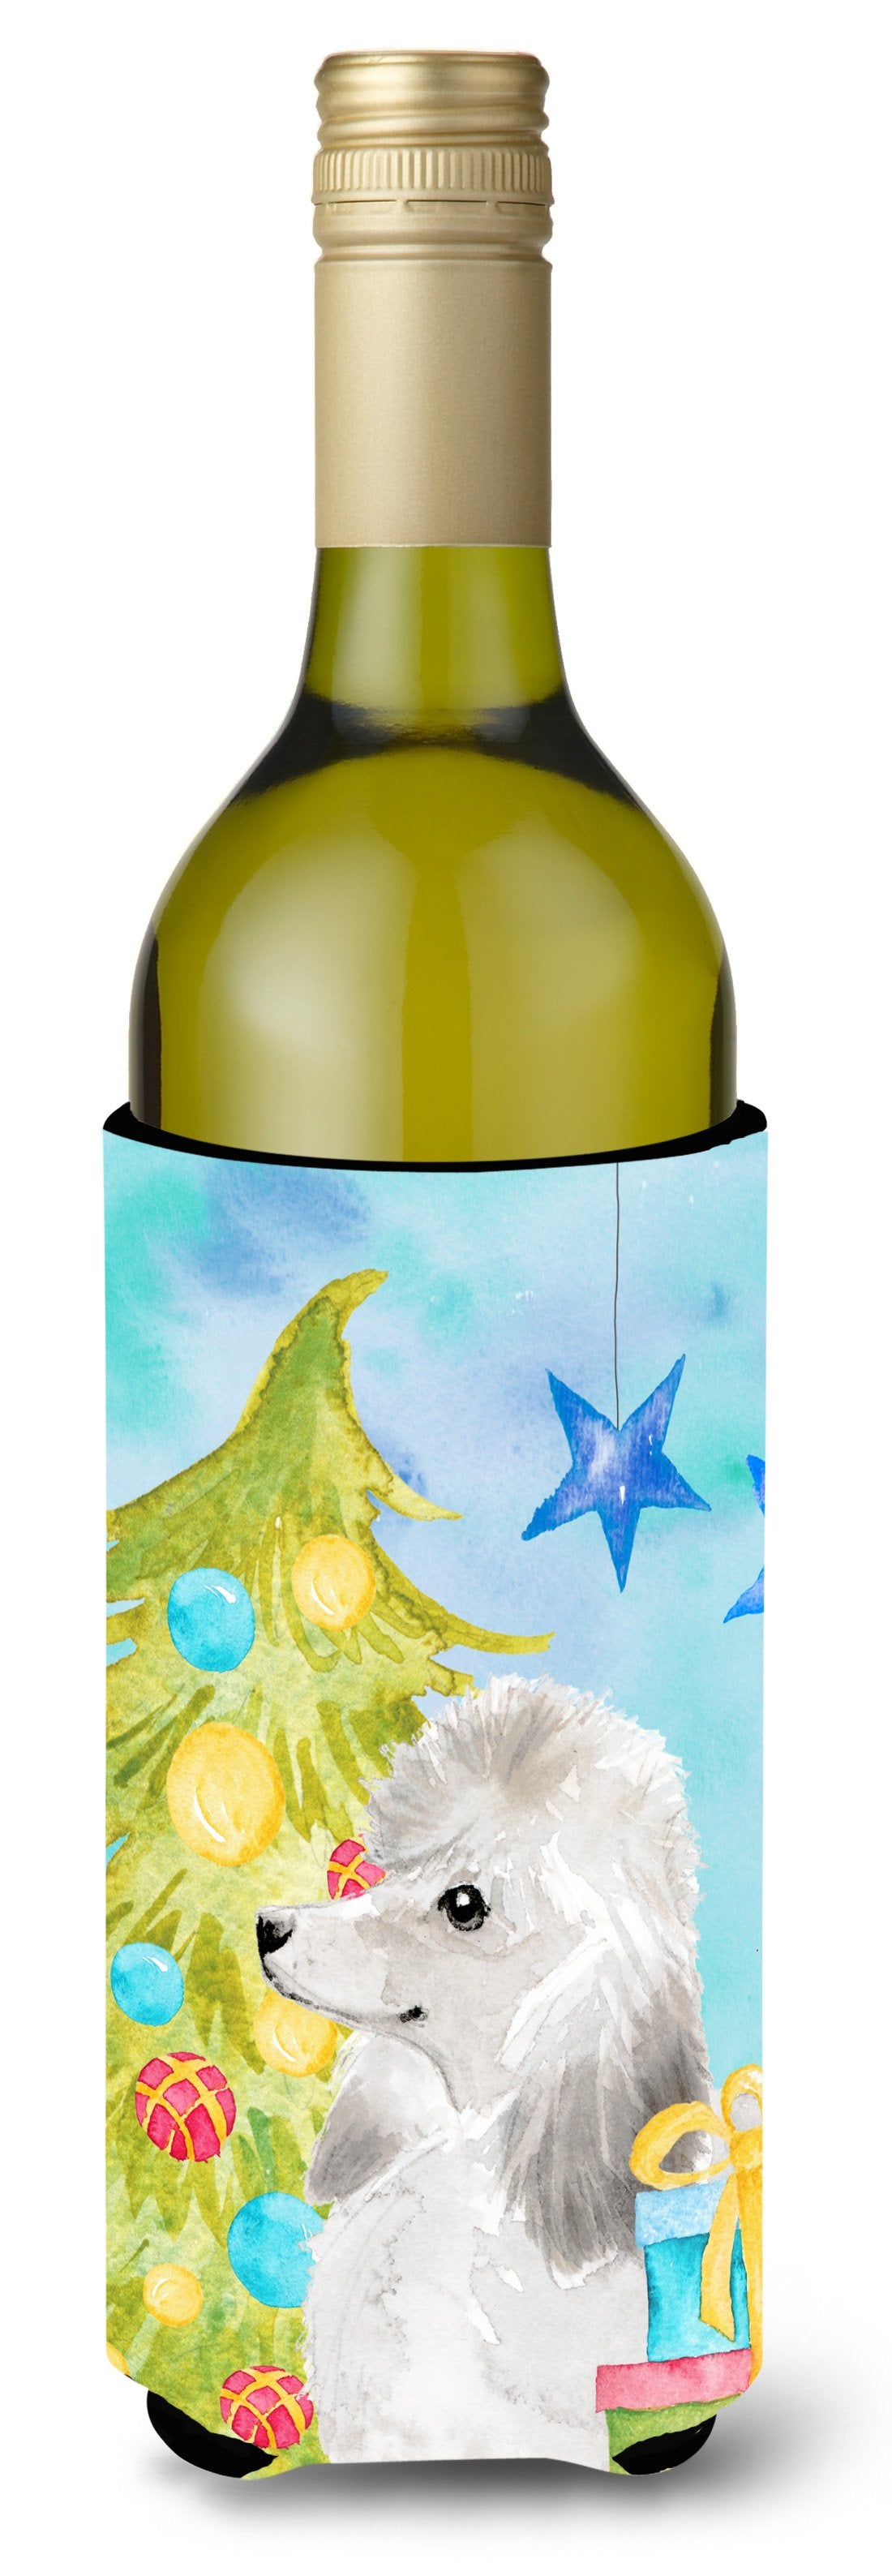 White Standard Poodle Christmas Wine Bottle Beverge Insulator Hugger BB9421LITERK by Caroline's Treasures